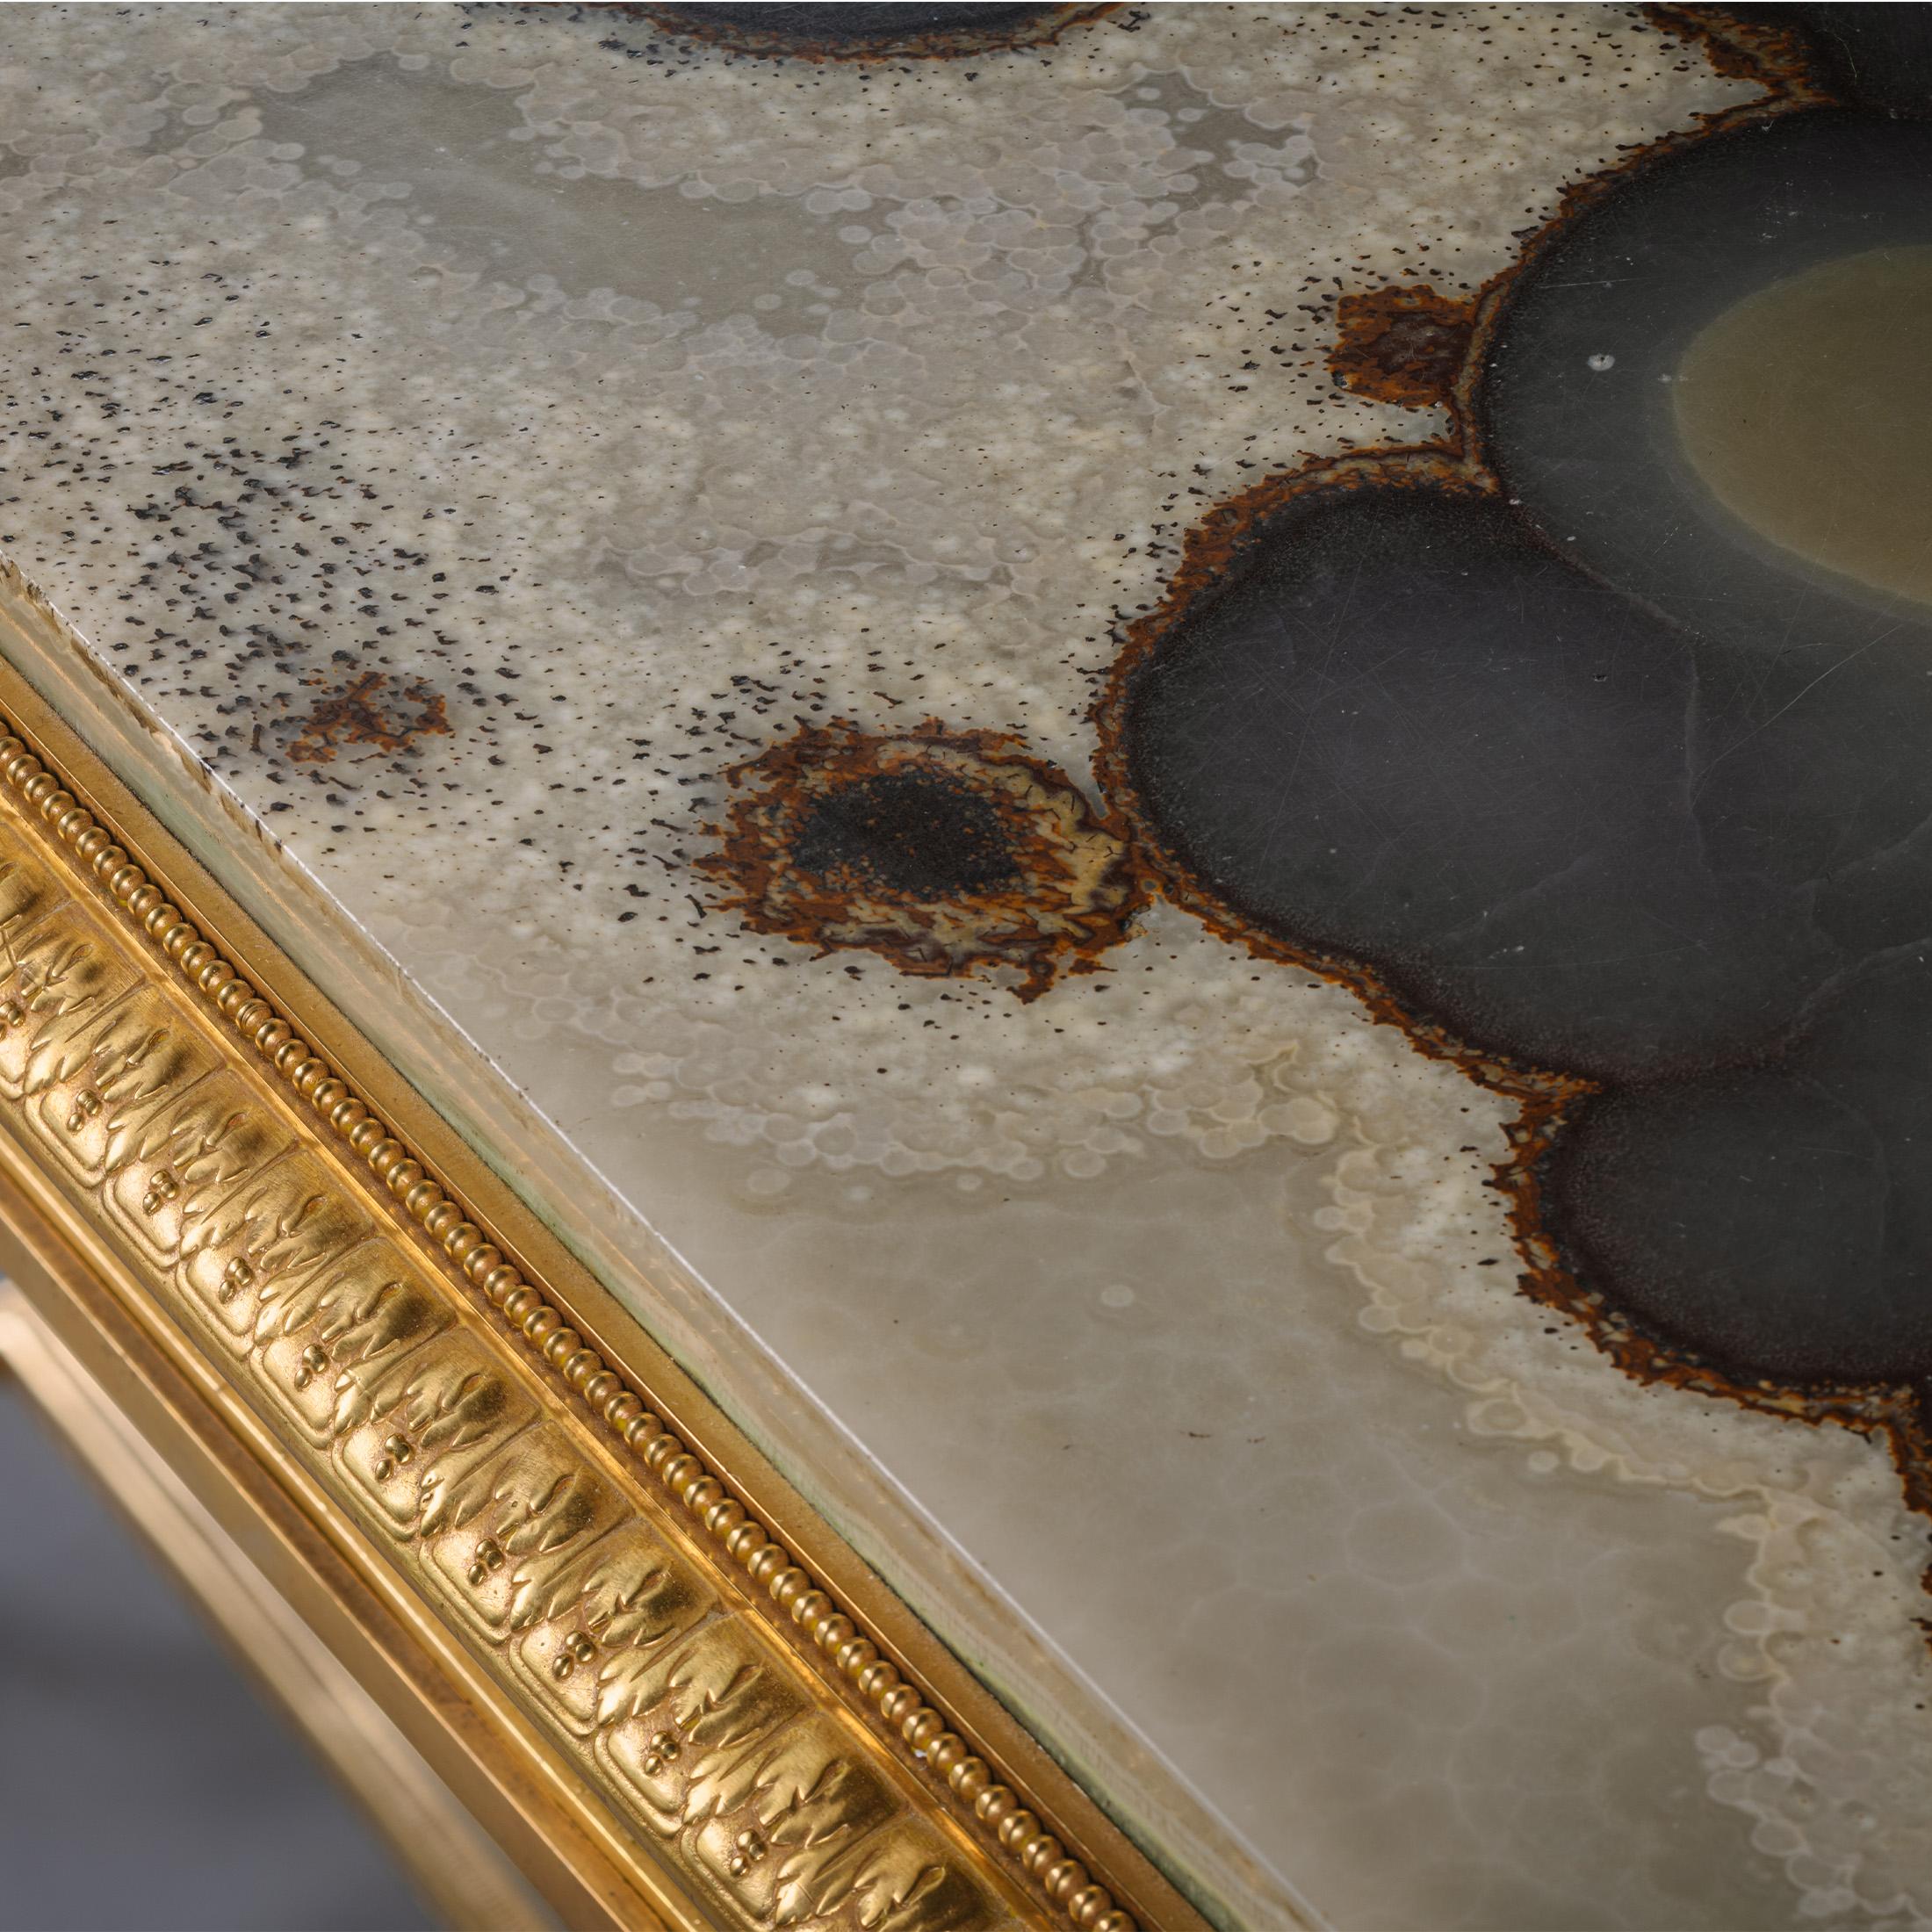 Table centrale Napoléon III en bronze doré et onyx, par la Maison Marnyhac, Paris. 

Signée sur le bord du châssis 'MAISON MARNYHAC 1. RUE DE LA PAIX PARIS'.

Cette table centrale opulente présente un plateau en onyx aux motifs magnifiques,